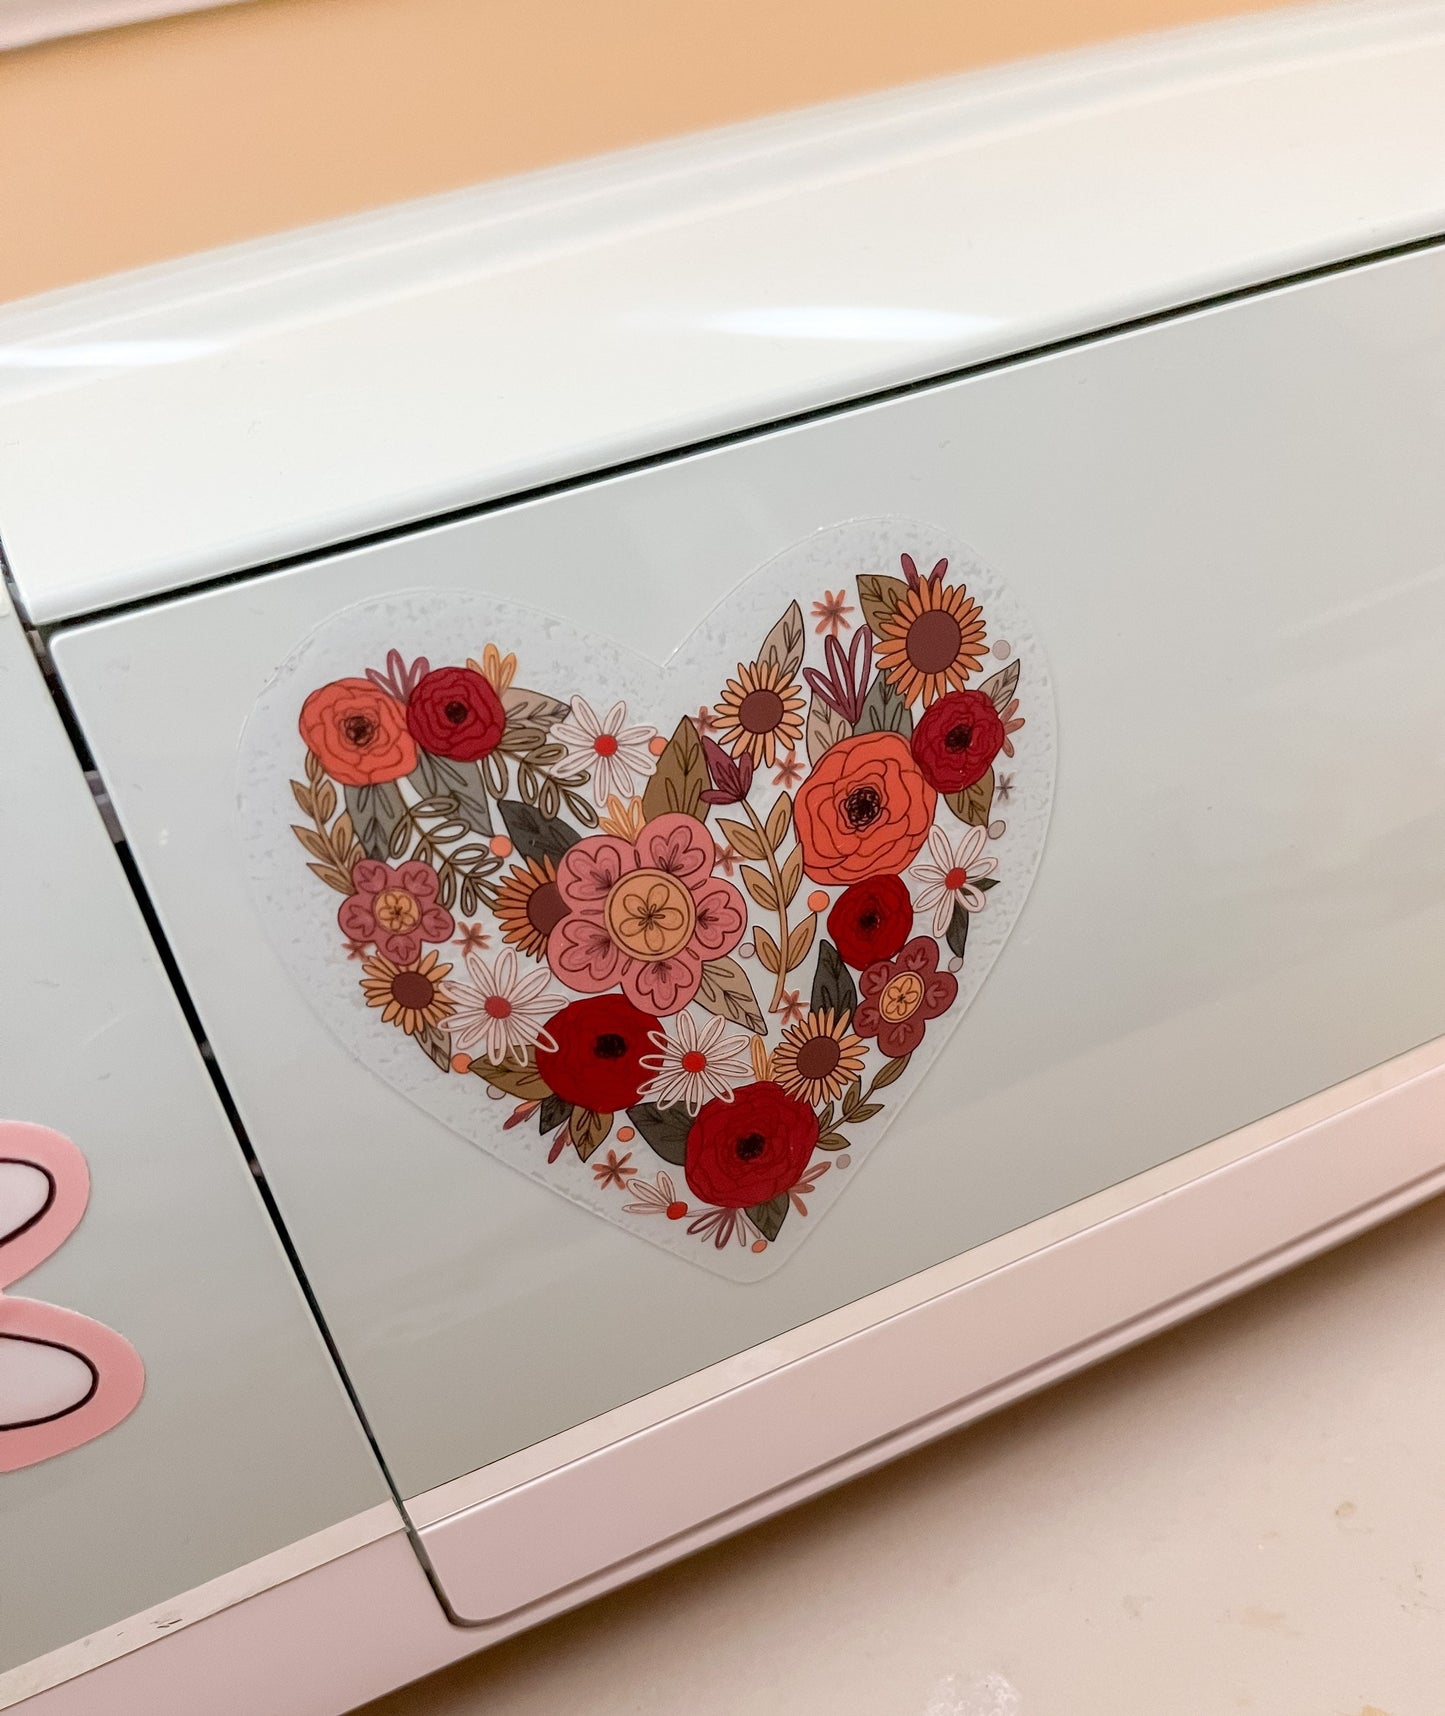 CLEAR Love in Bloom Floral Heart Sticker - Vinyl, Waterproof Sticker